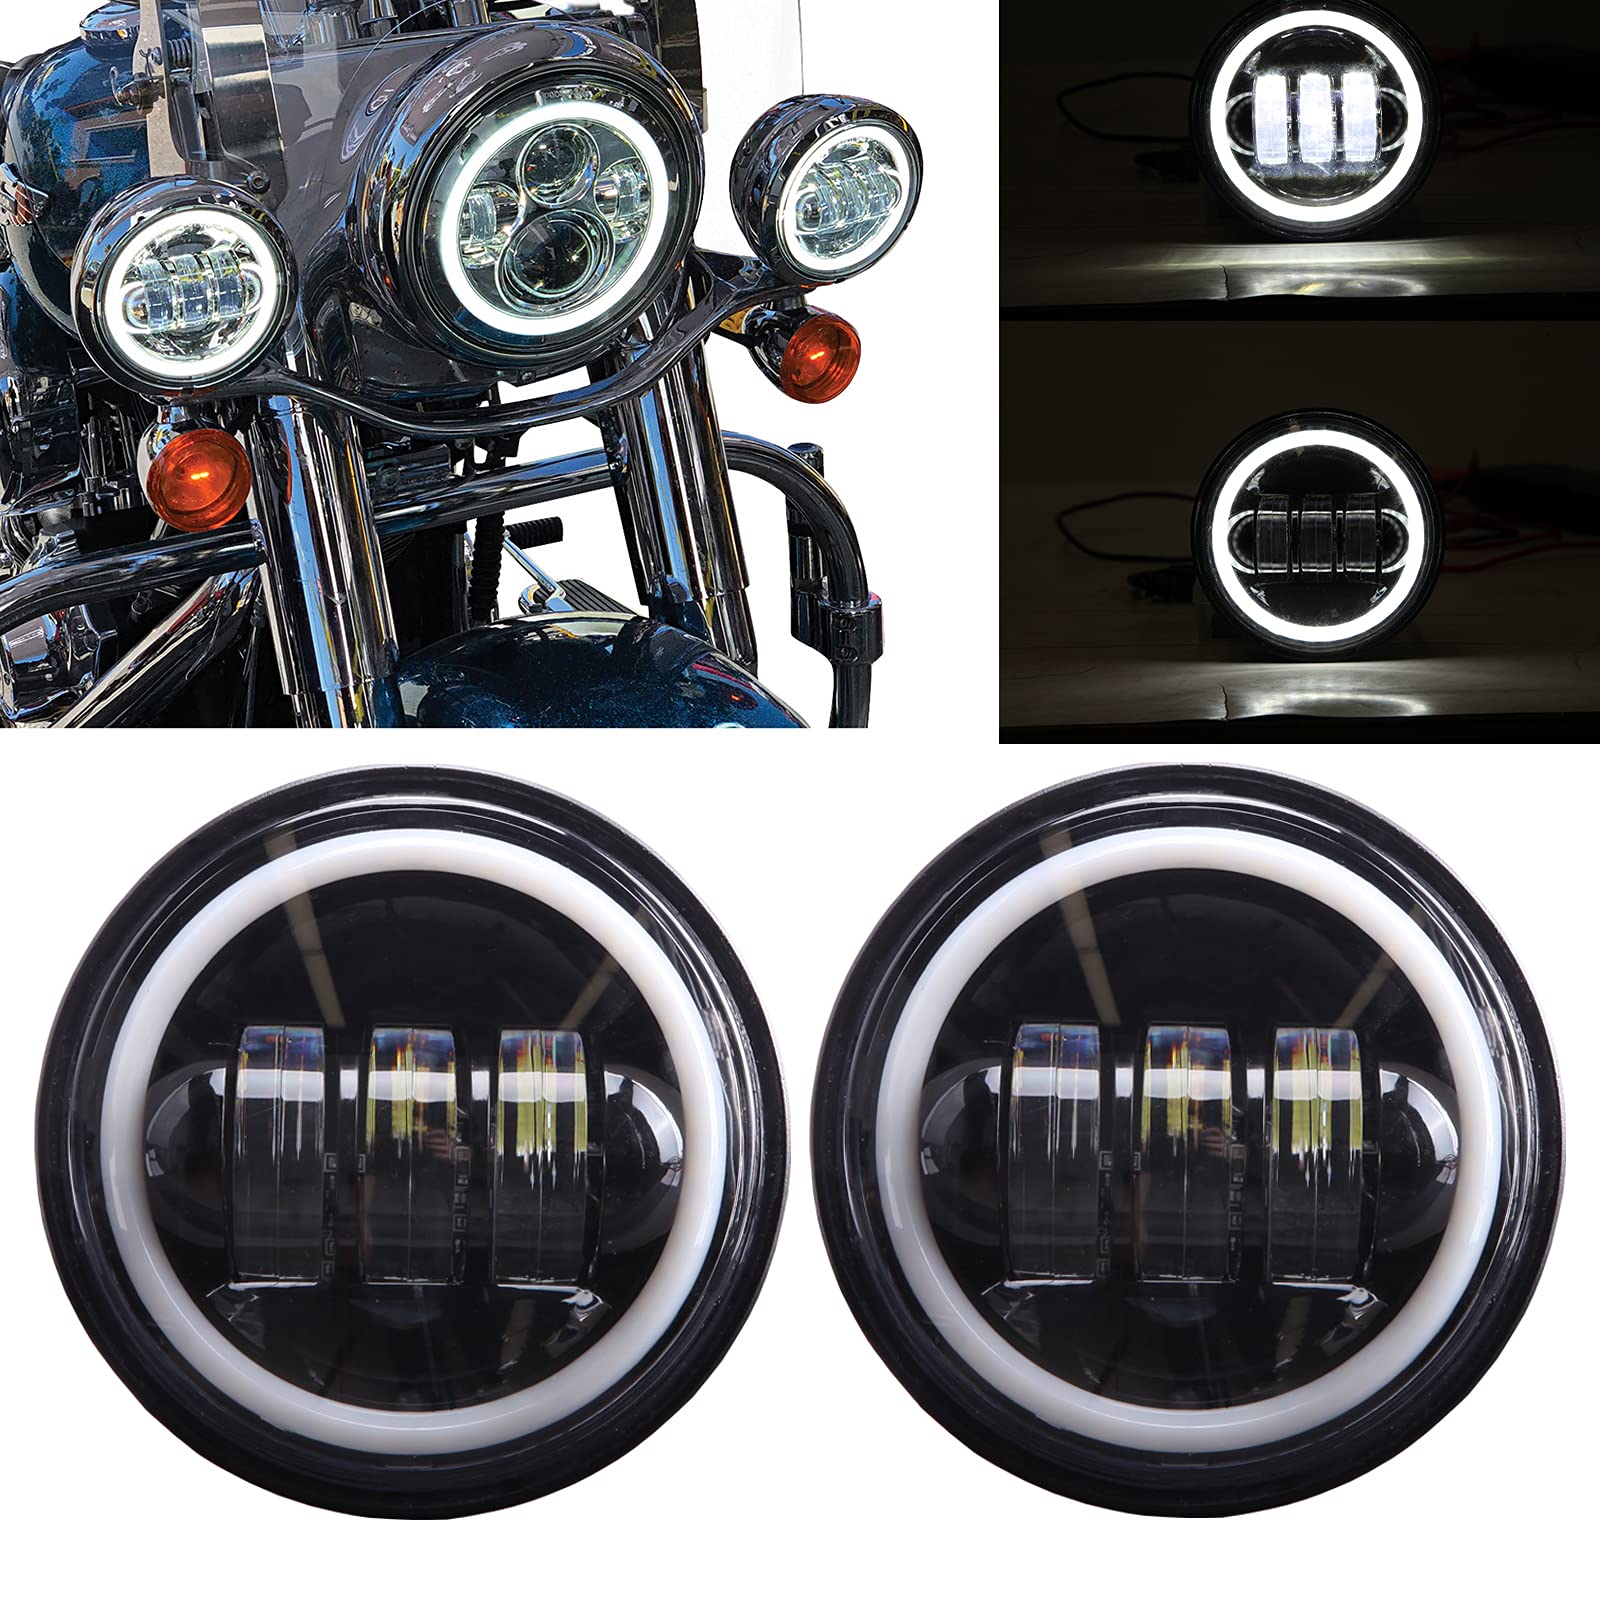 KEEPDSGN 2pcs 4.5" LED Nebelscheinwerfer Motorrad Licht für Road King Glide Street Glide Electra. von KEEPDSGN